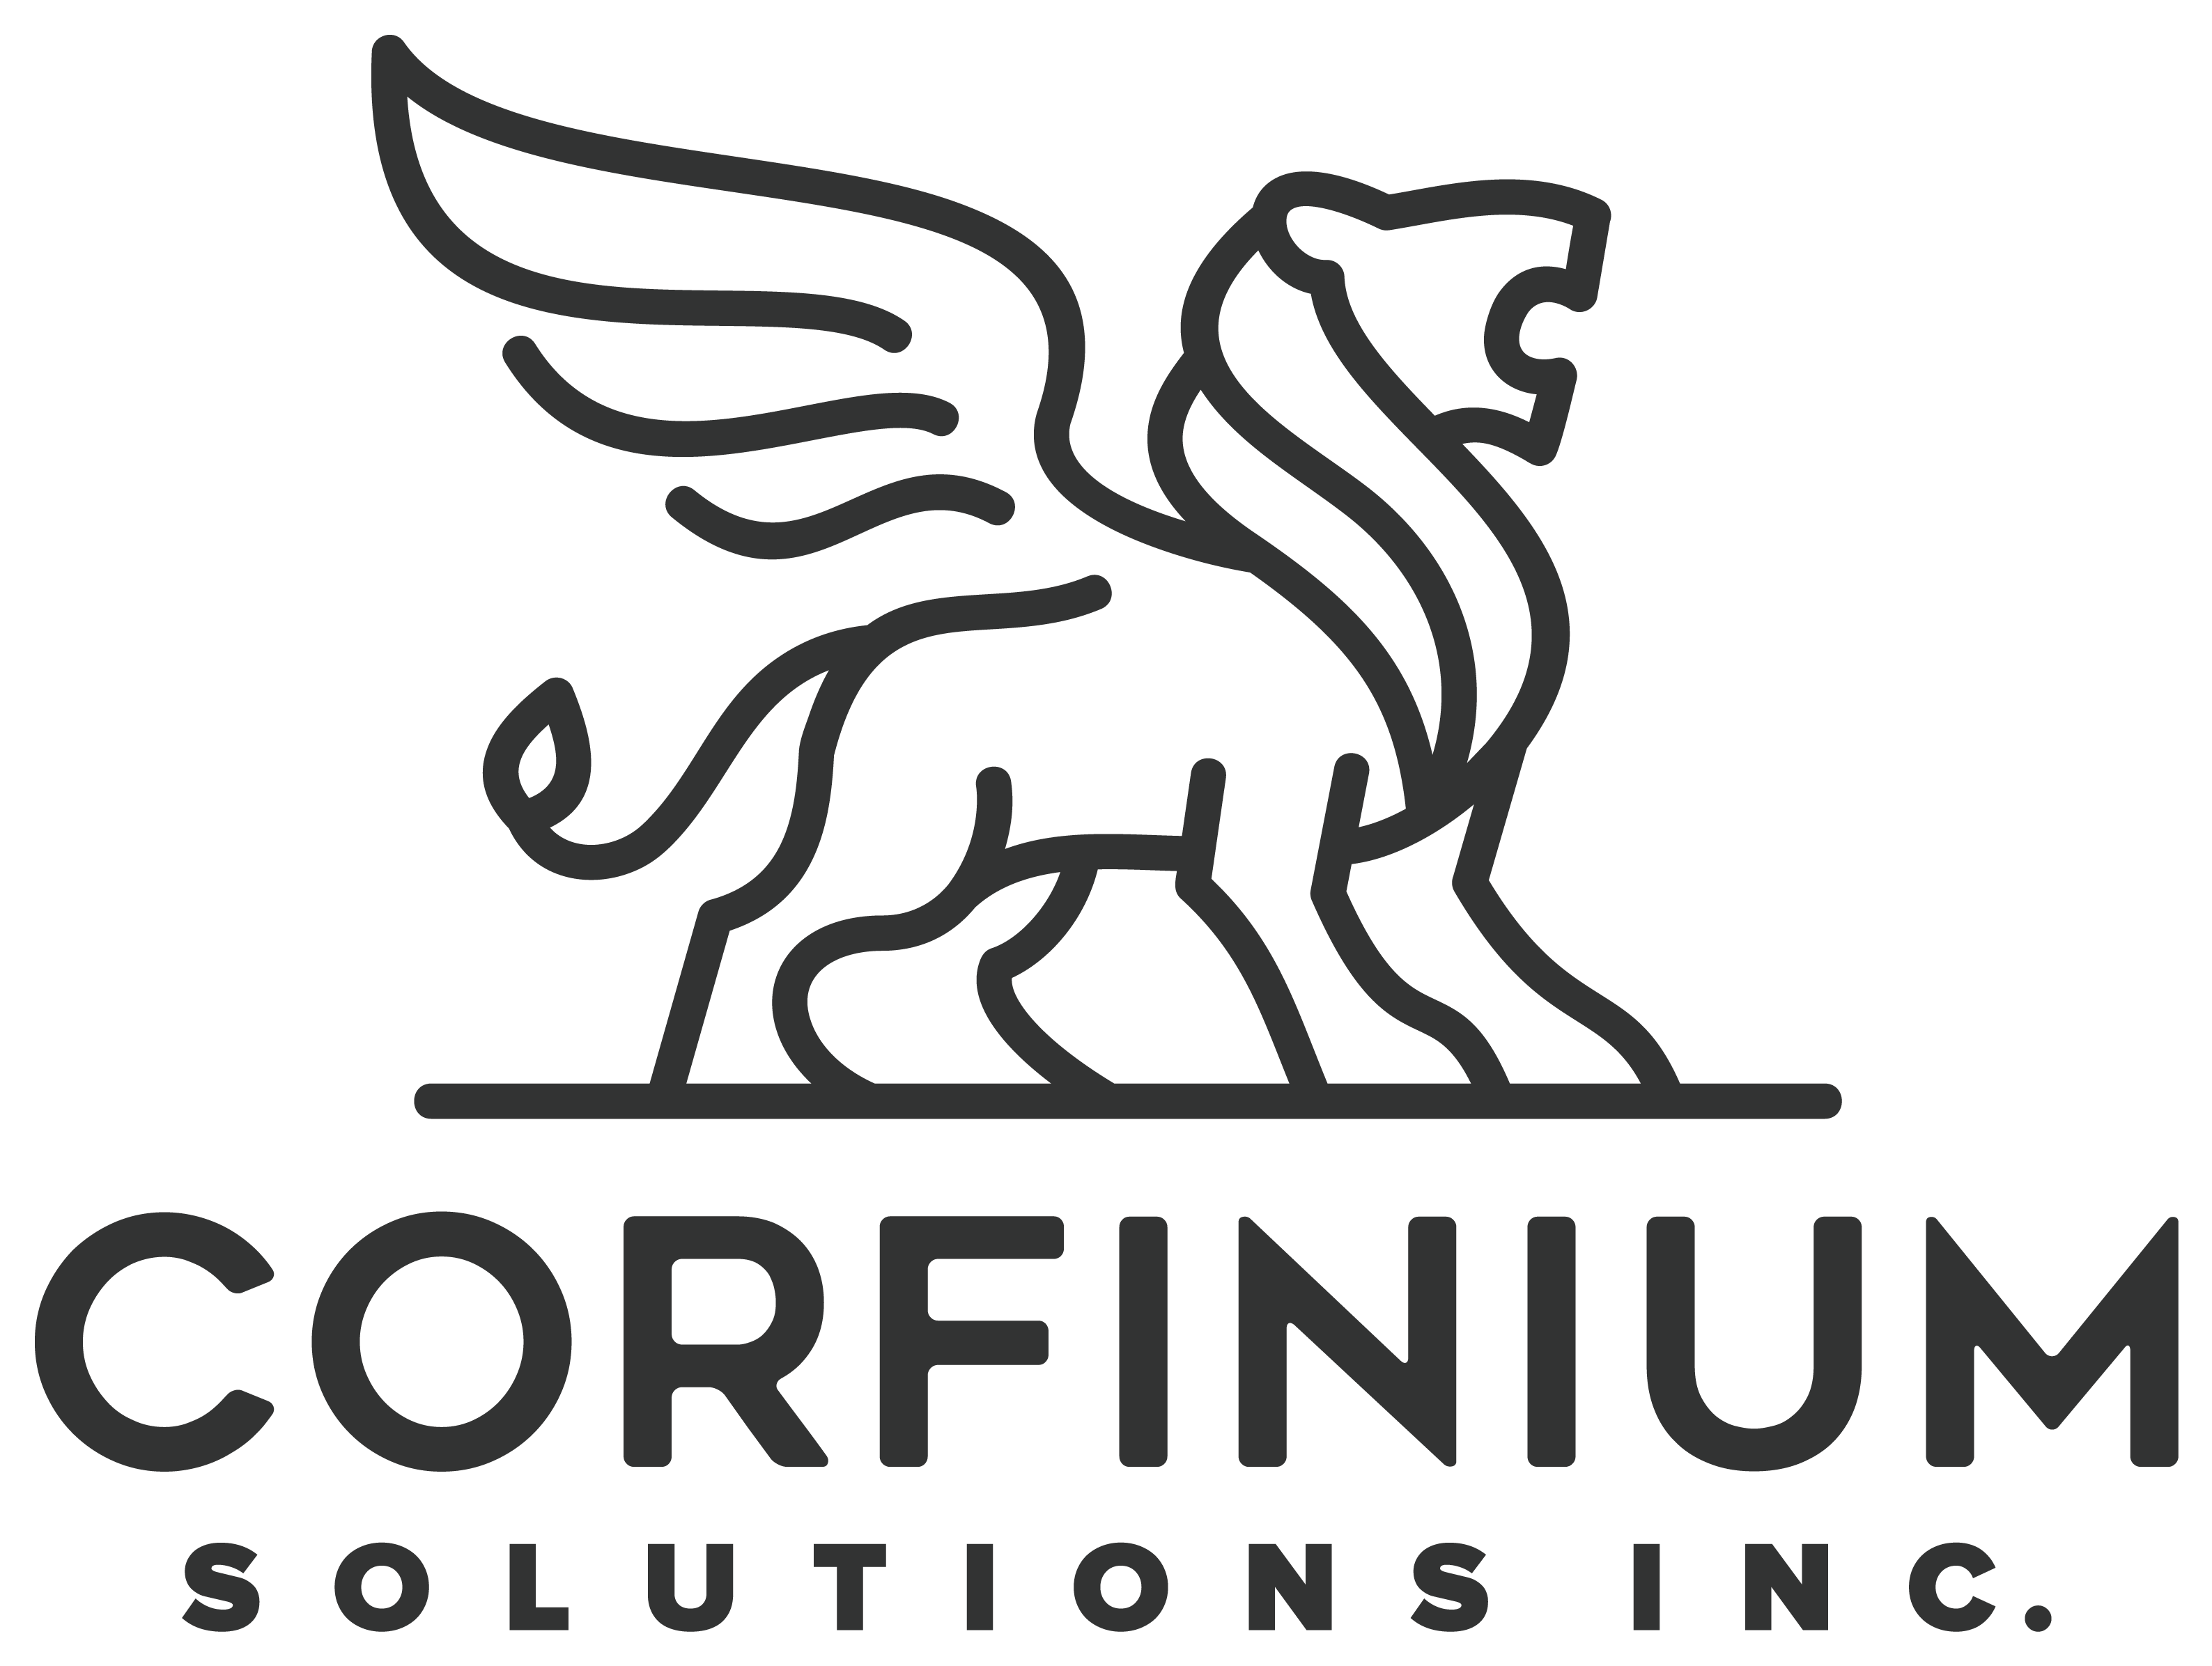 Corfinium Solutions Inc logo